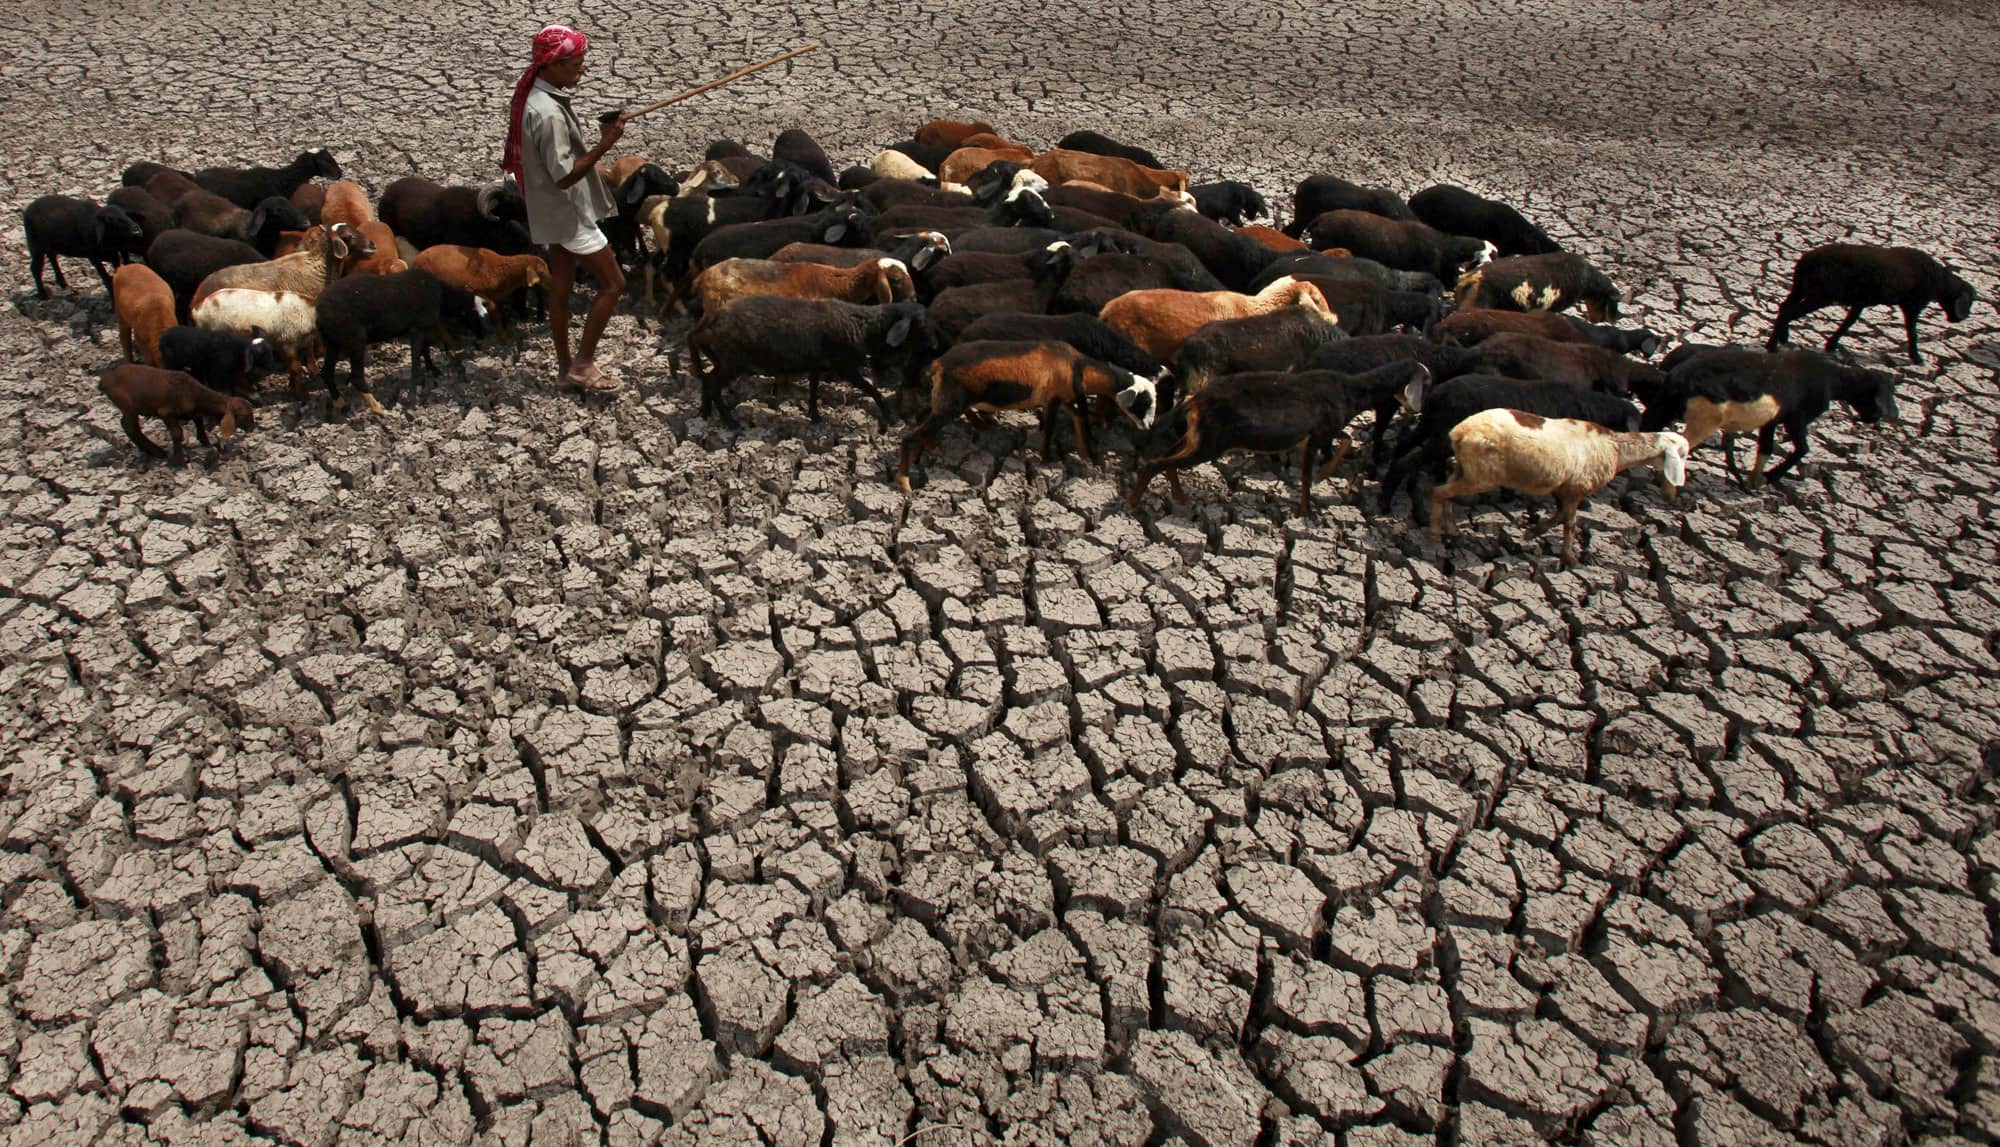 הודו מתייבשת: רועה צאן חולף על פני מאגר מים שיבש לחלוטין בהידרבאד, 14 באפריל 2021 (צילום: AP Photo/Mahesh Kumar A)